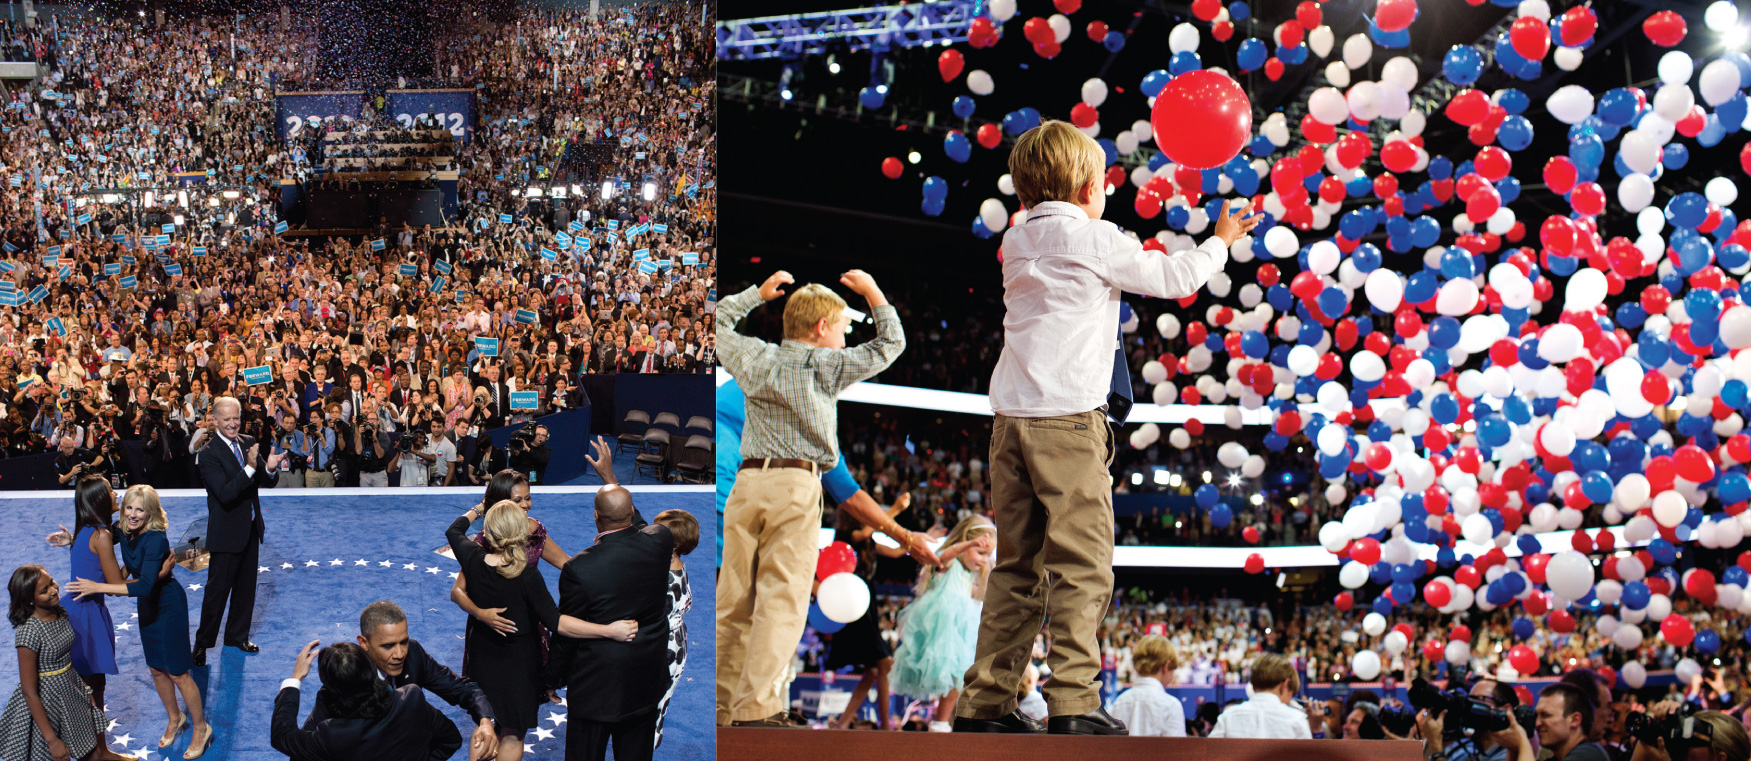 L'image de gauche représente Obama et sa famille devant une foule nombreuse. L'image de gauche représente plusieurs enfants sur une scène devant une foule nombreuse. Un grand nombre de ballons tombent d'en haut.